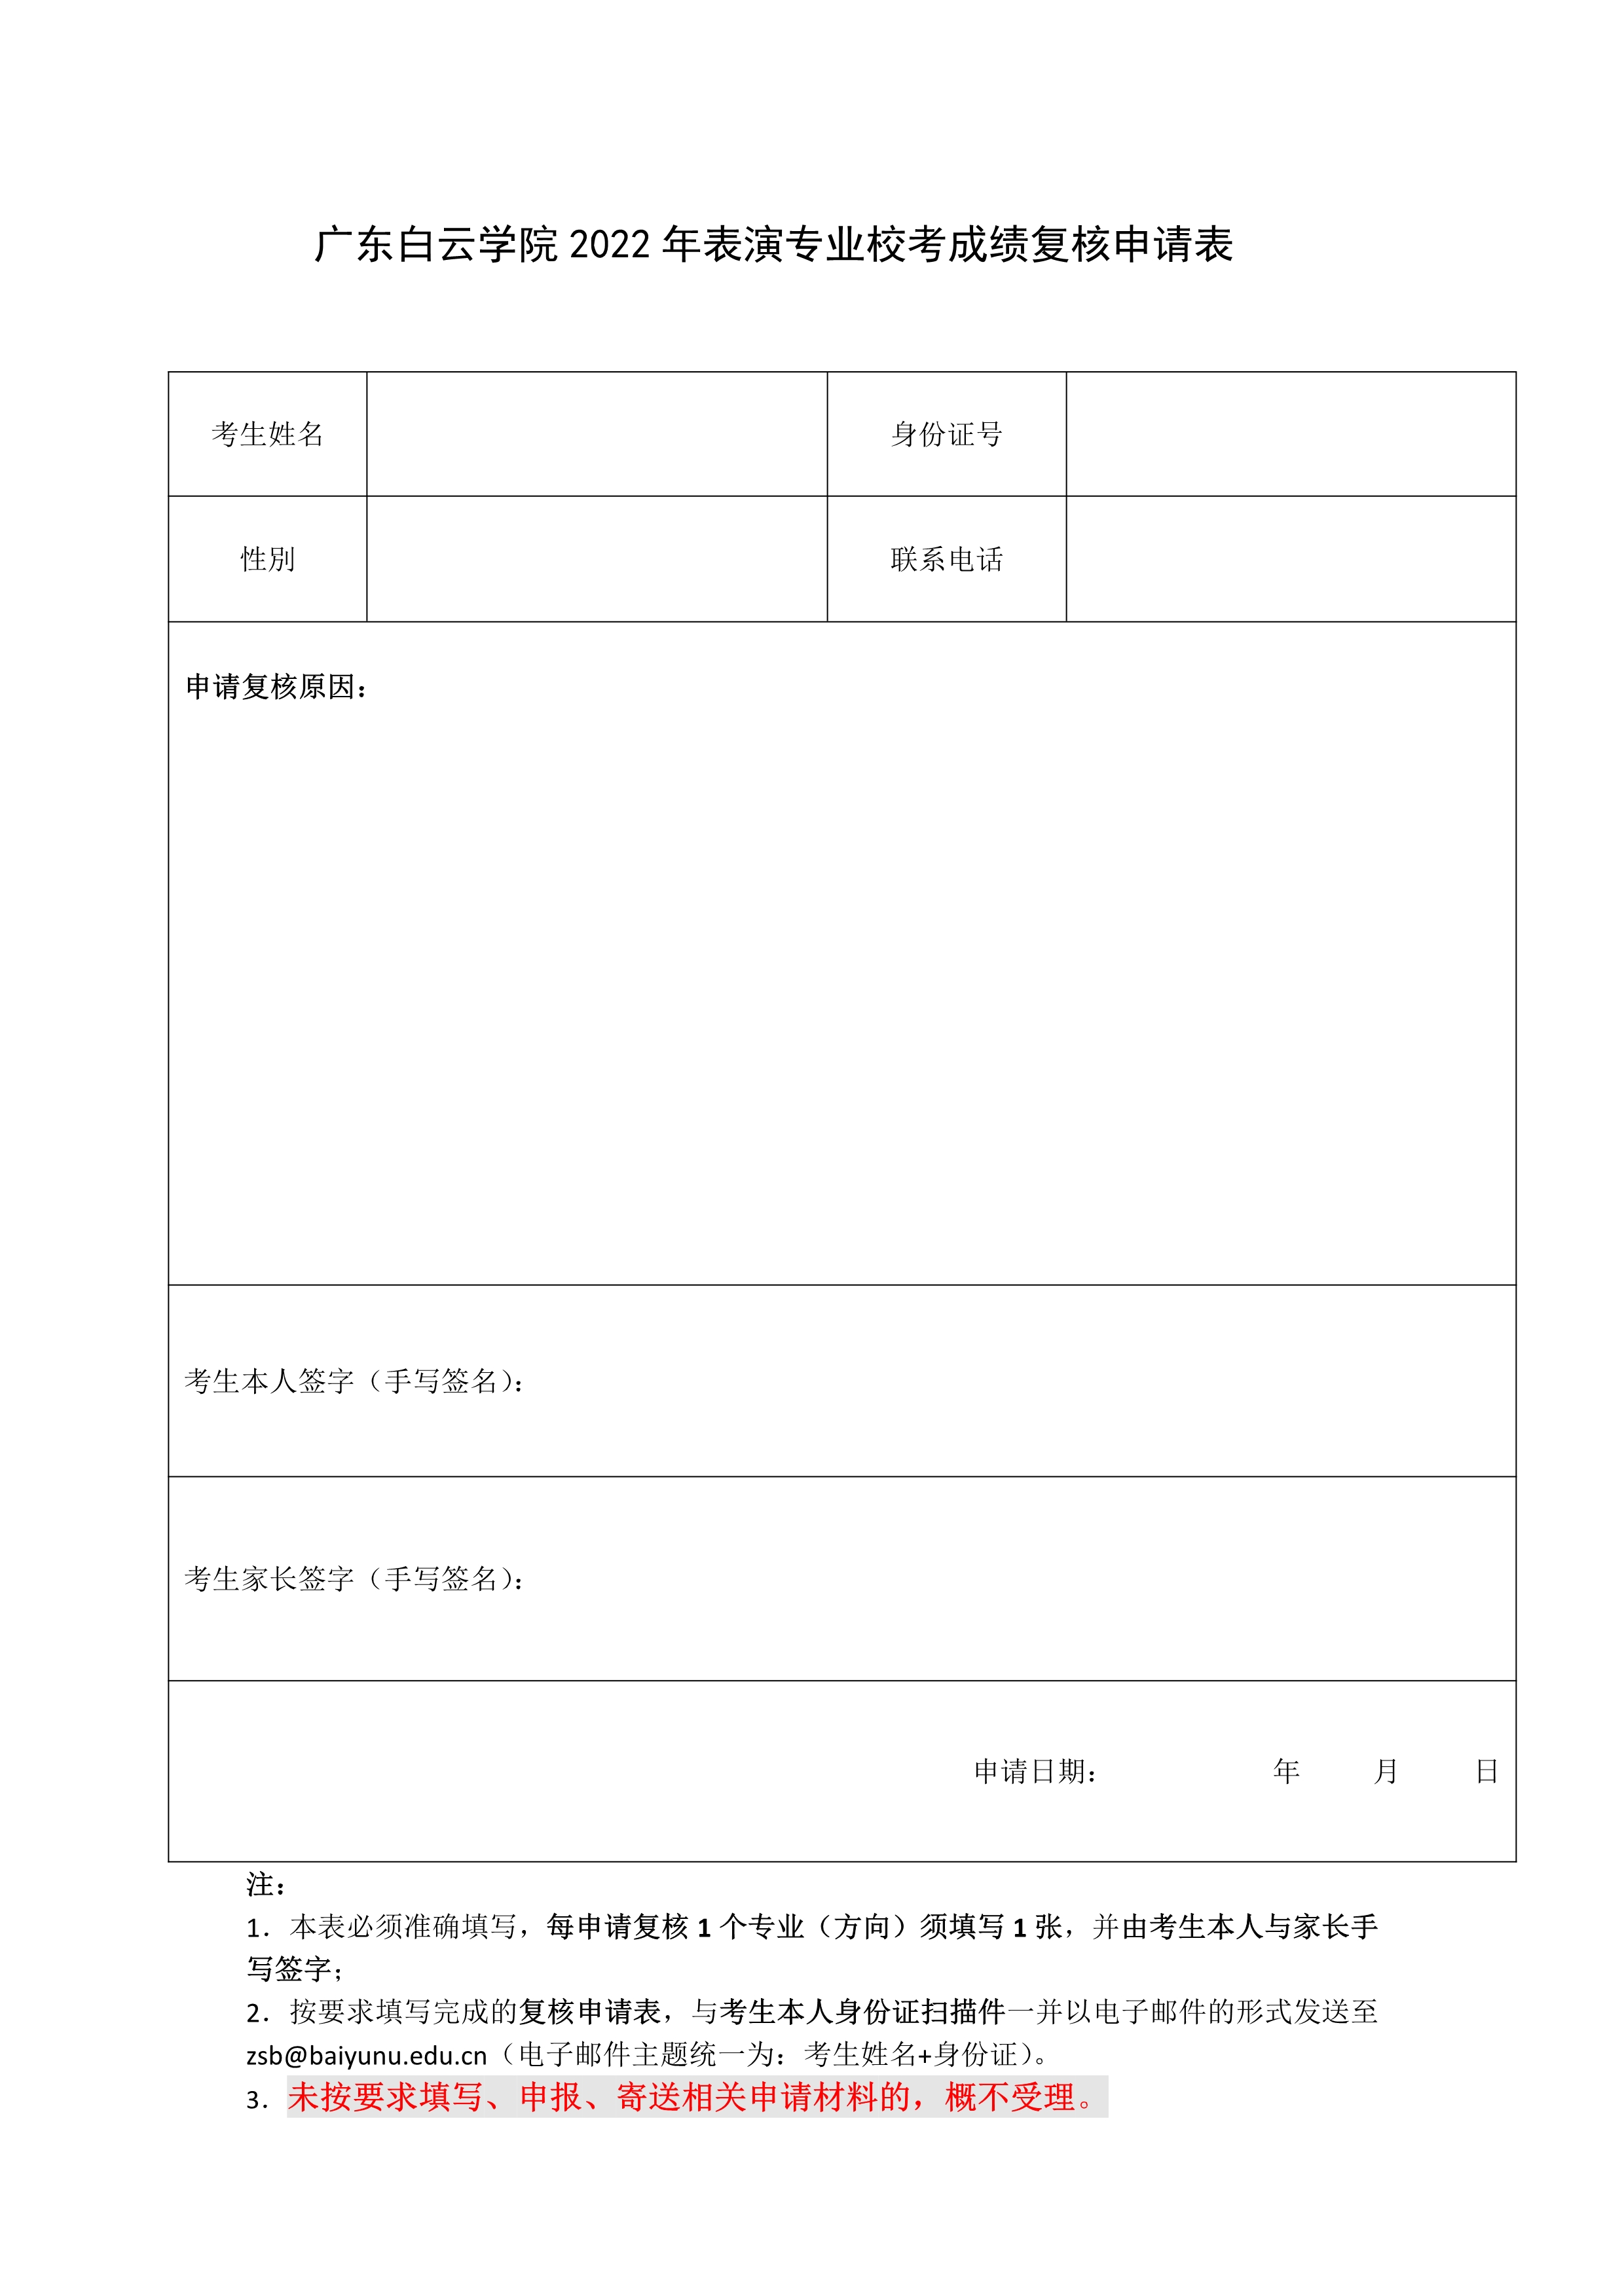 广东白云学院表演专业校考成绩复核申请表_1.jpg